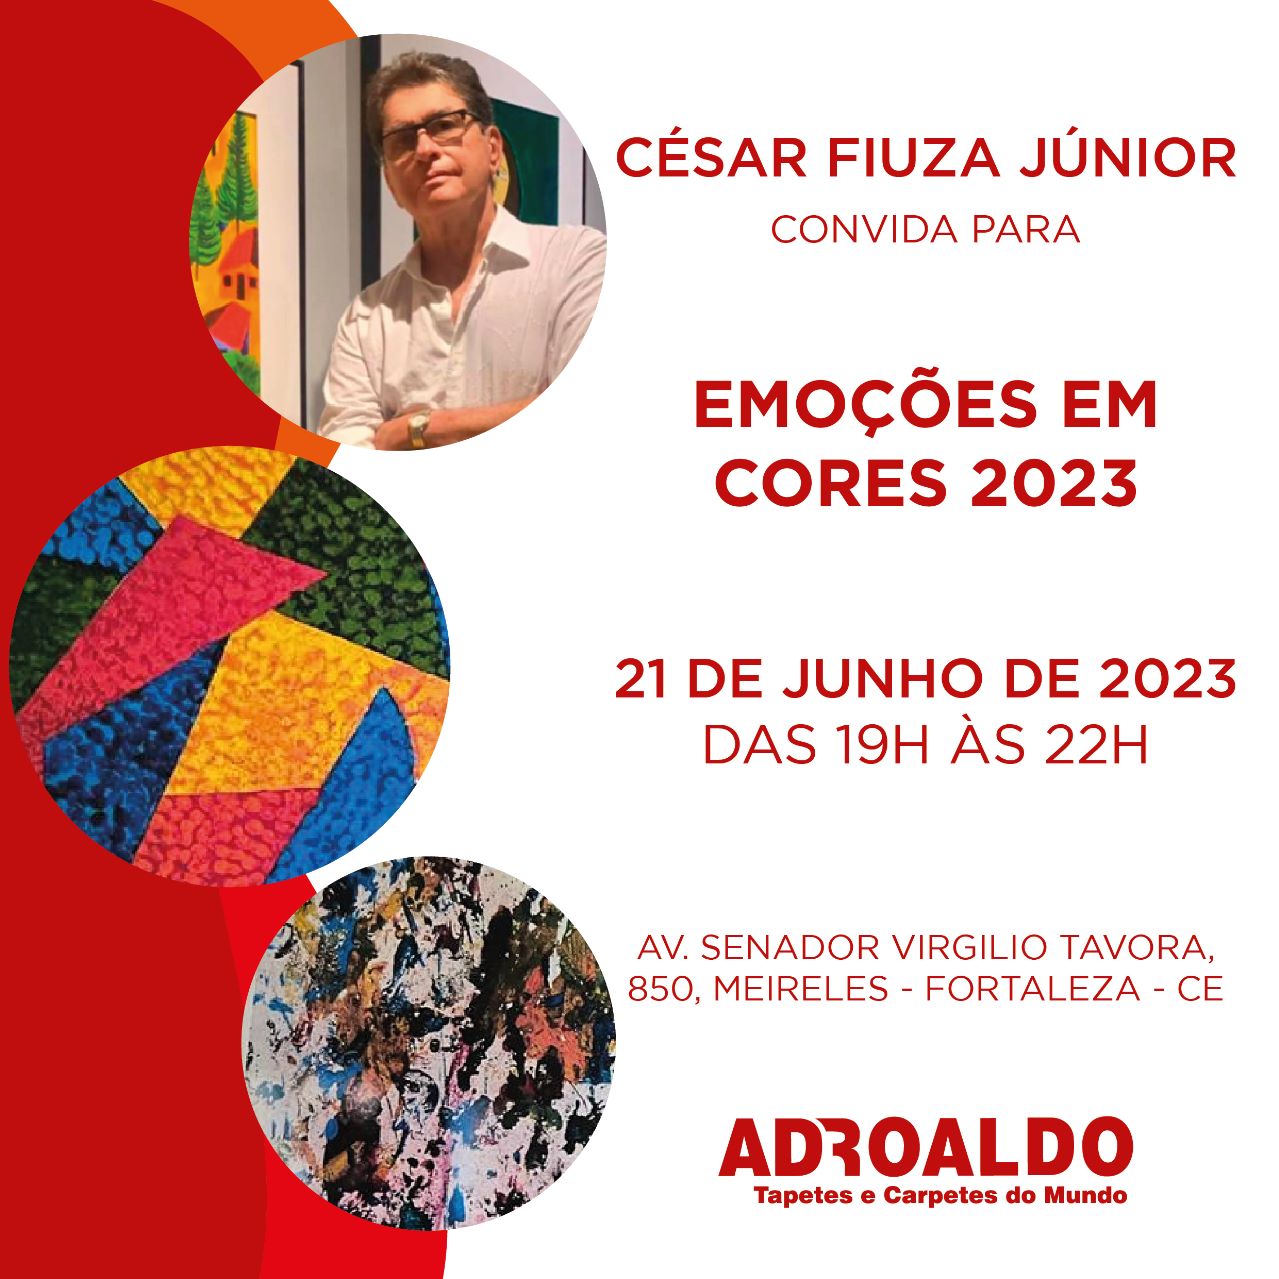 Adroaldo Tapetes é palco da exposição de César Fiuza Júnior nesta quarta-feira (21)